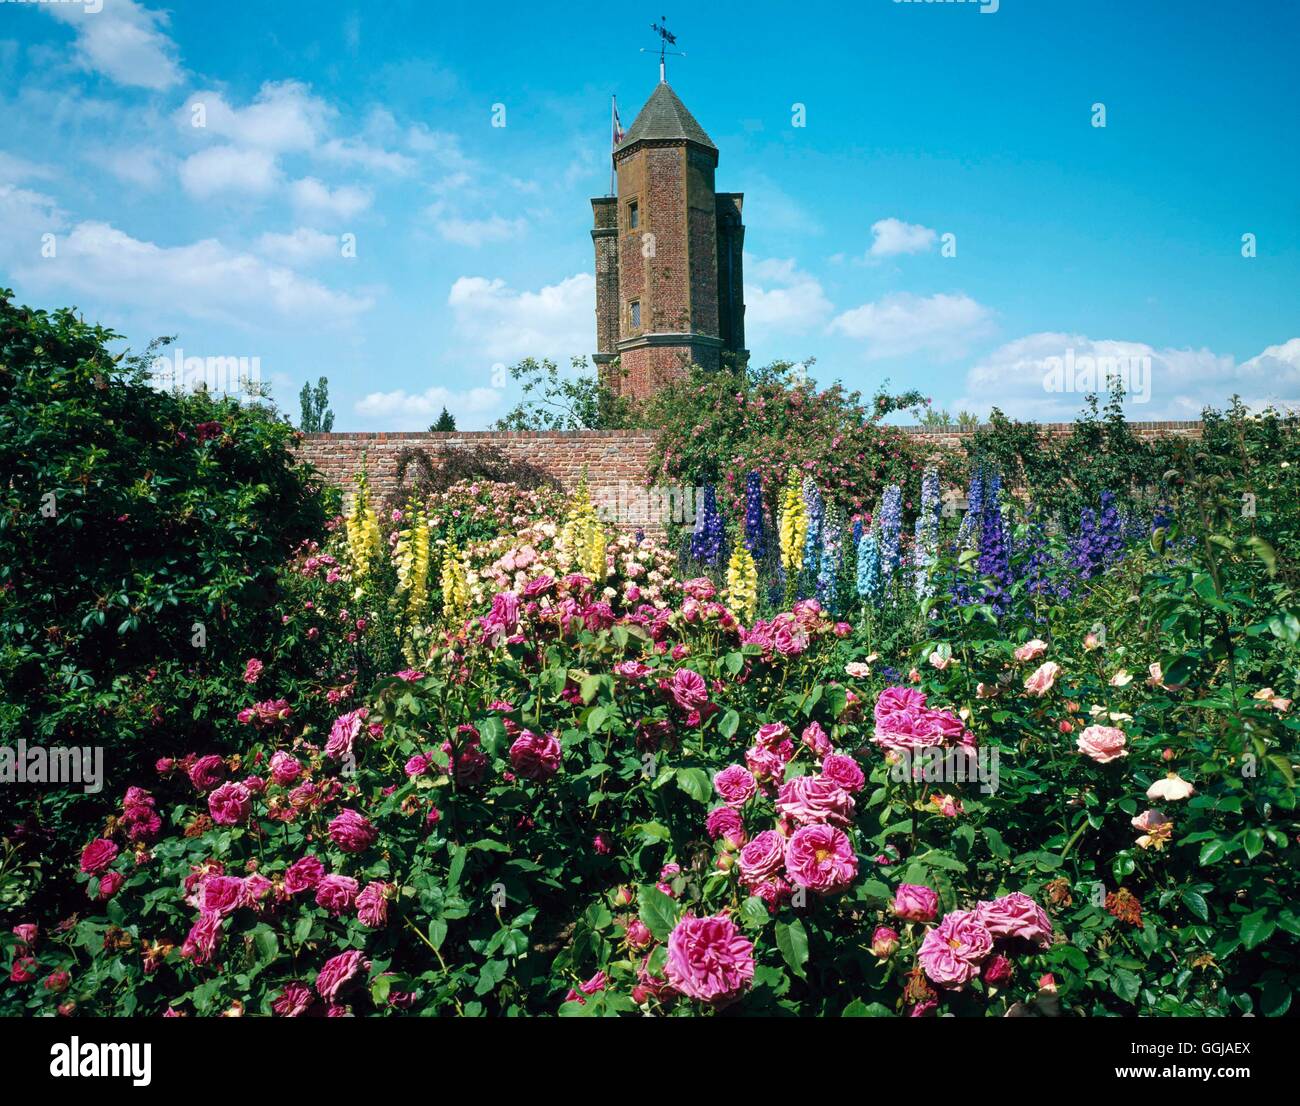 NT de Sissinghurst- Kent- - Vue de la tour de la Roseraie DGN110765 Banque D'Images